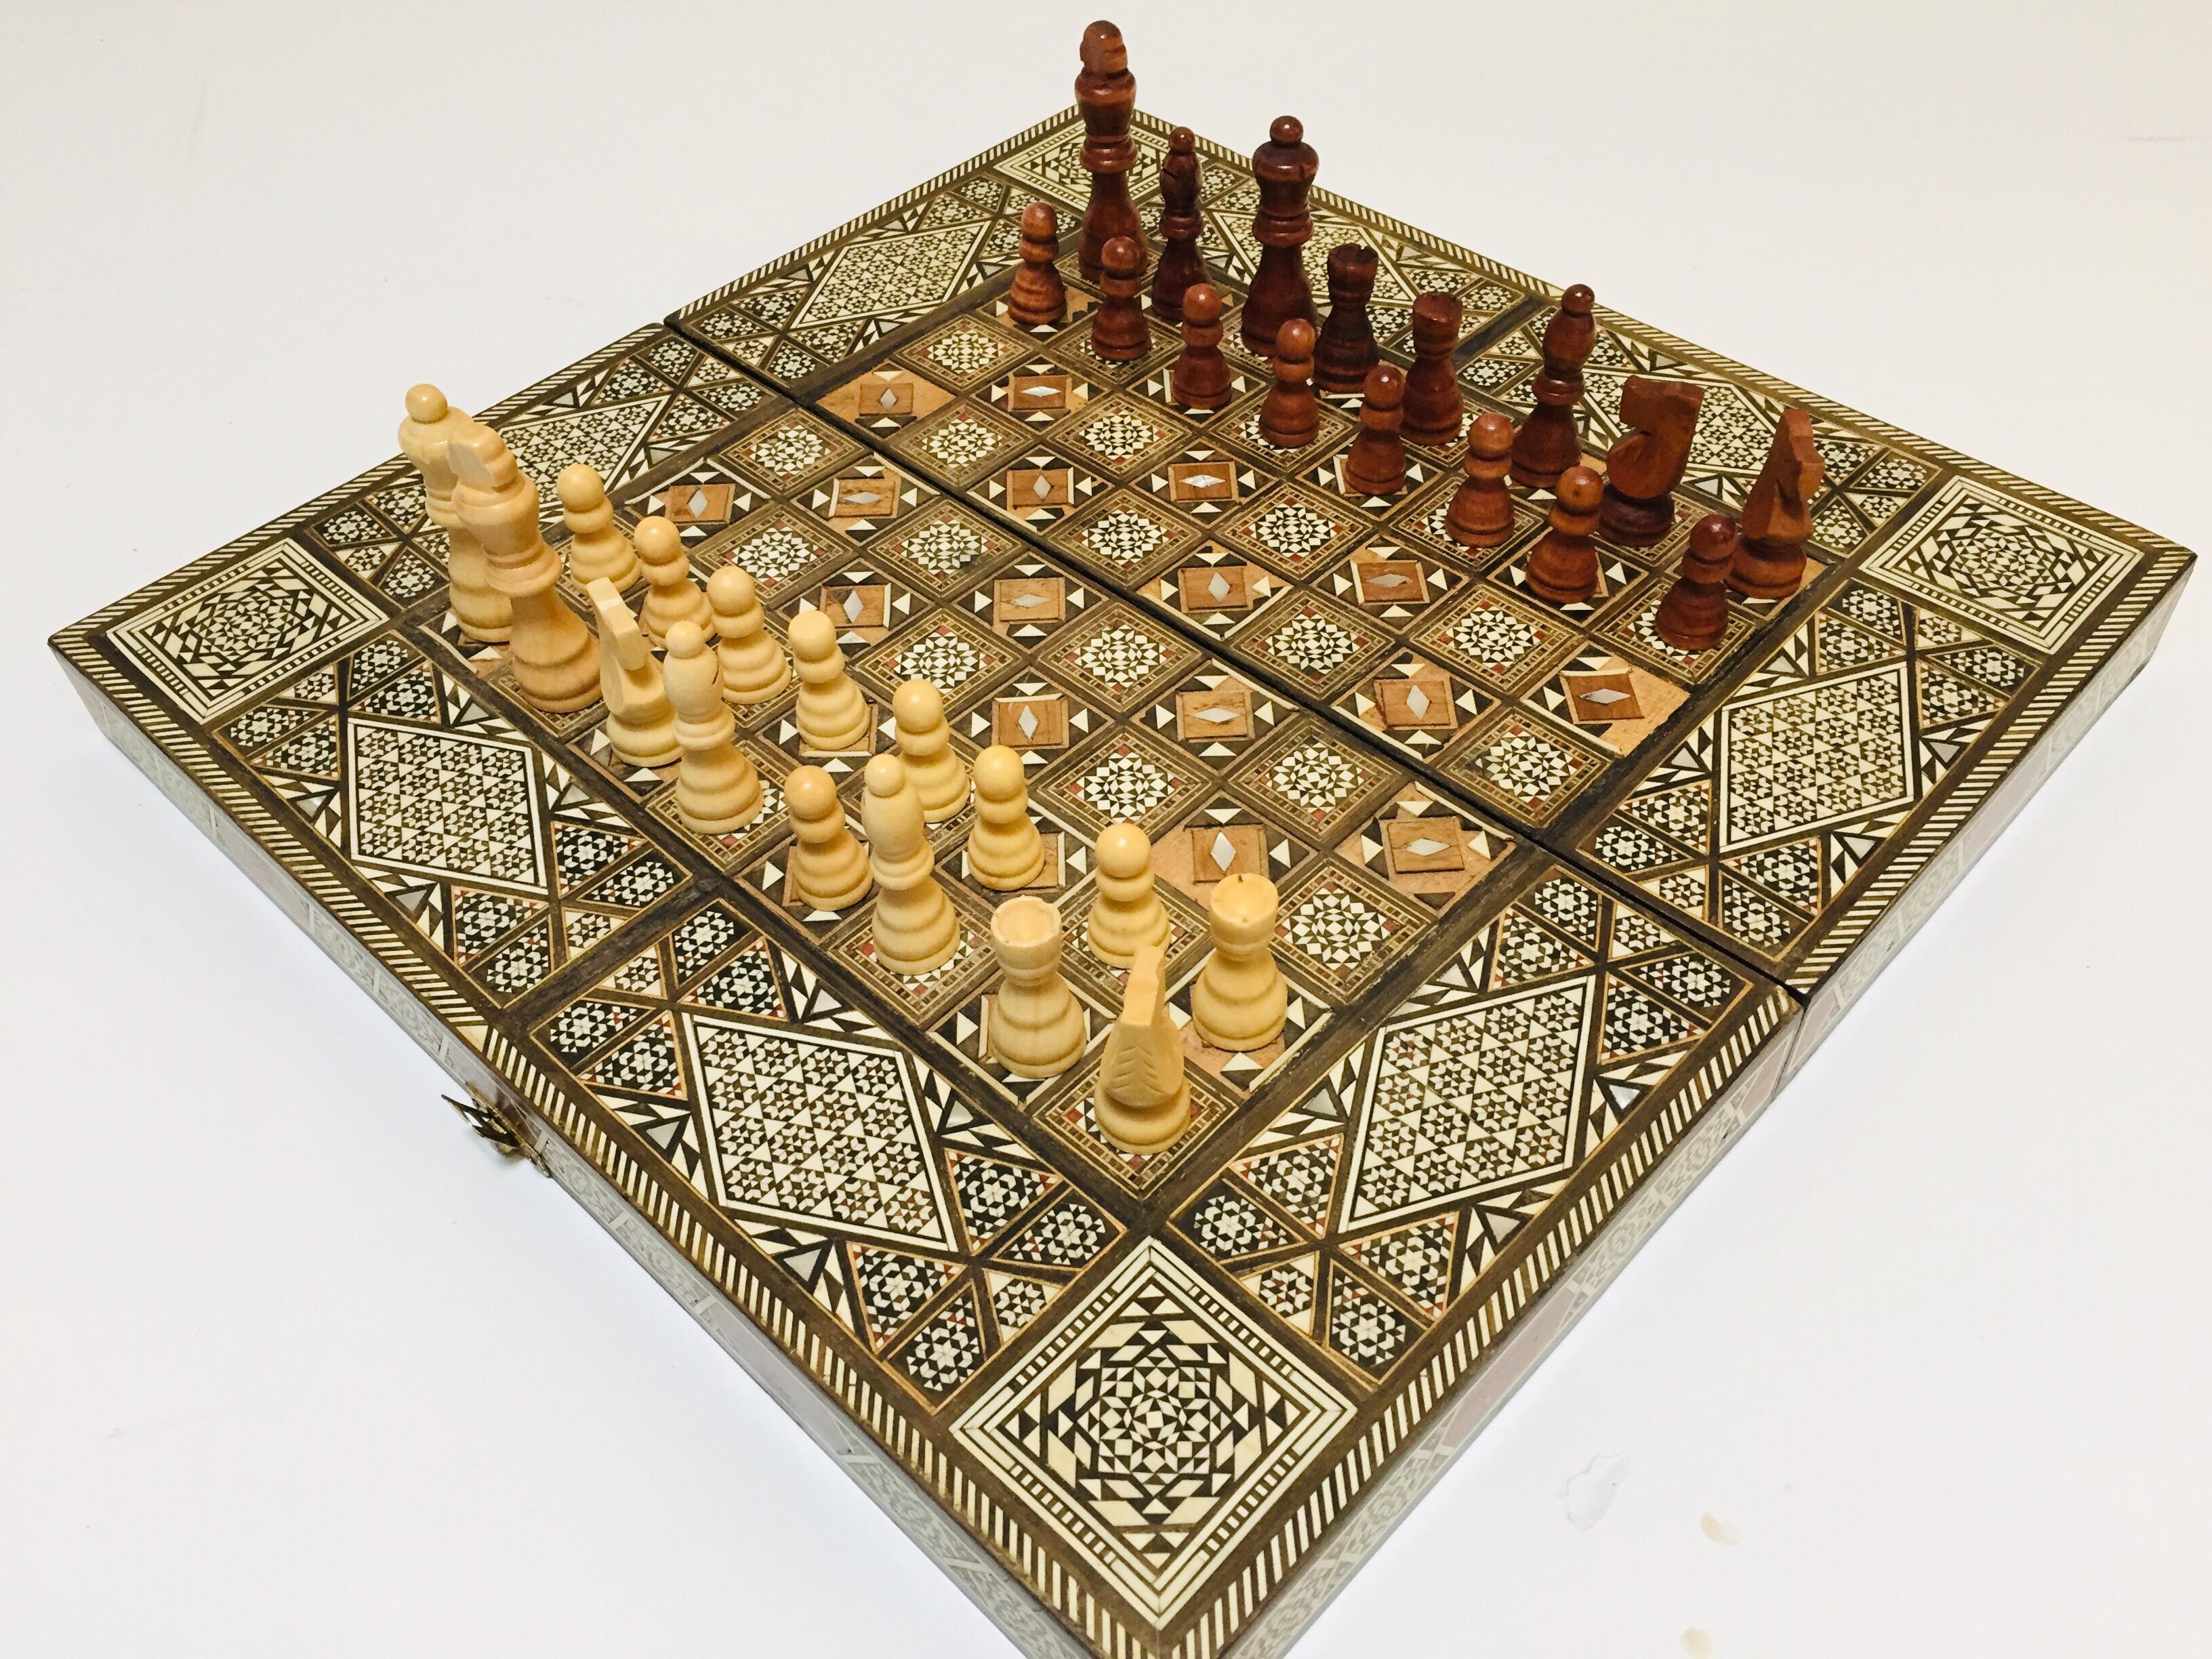 Vieux grand jeu complet de backgammon et d'echecs en mosaique incrustee syrienne 8